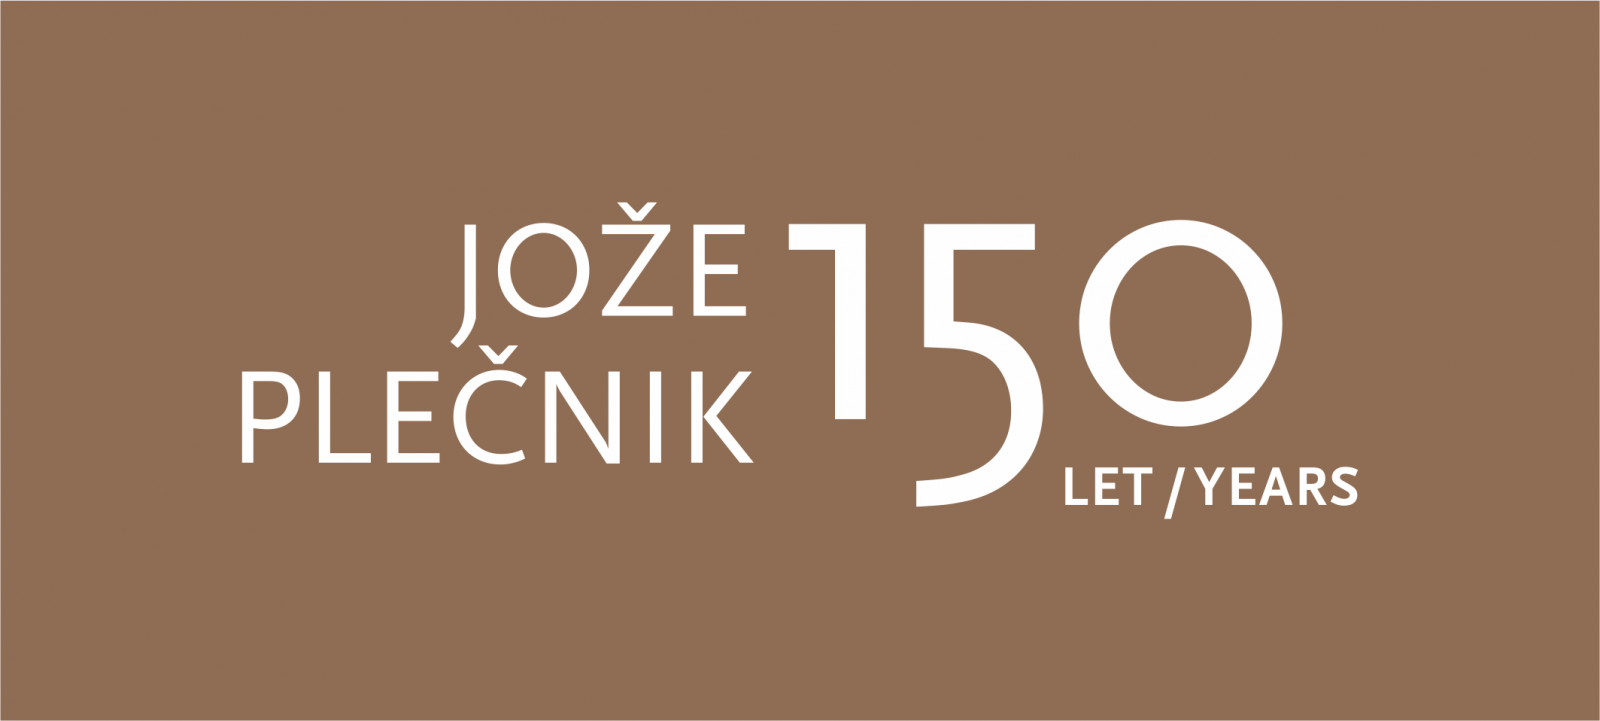 Napis Jože Plečnik 150 let/years na rjavi podlagi z belimi črkami in številkami